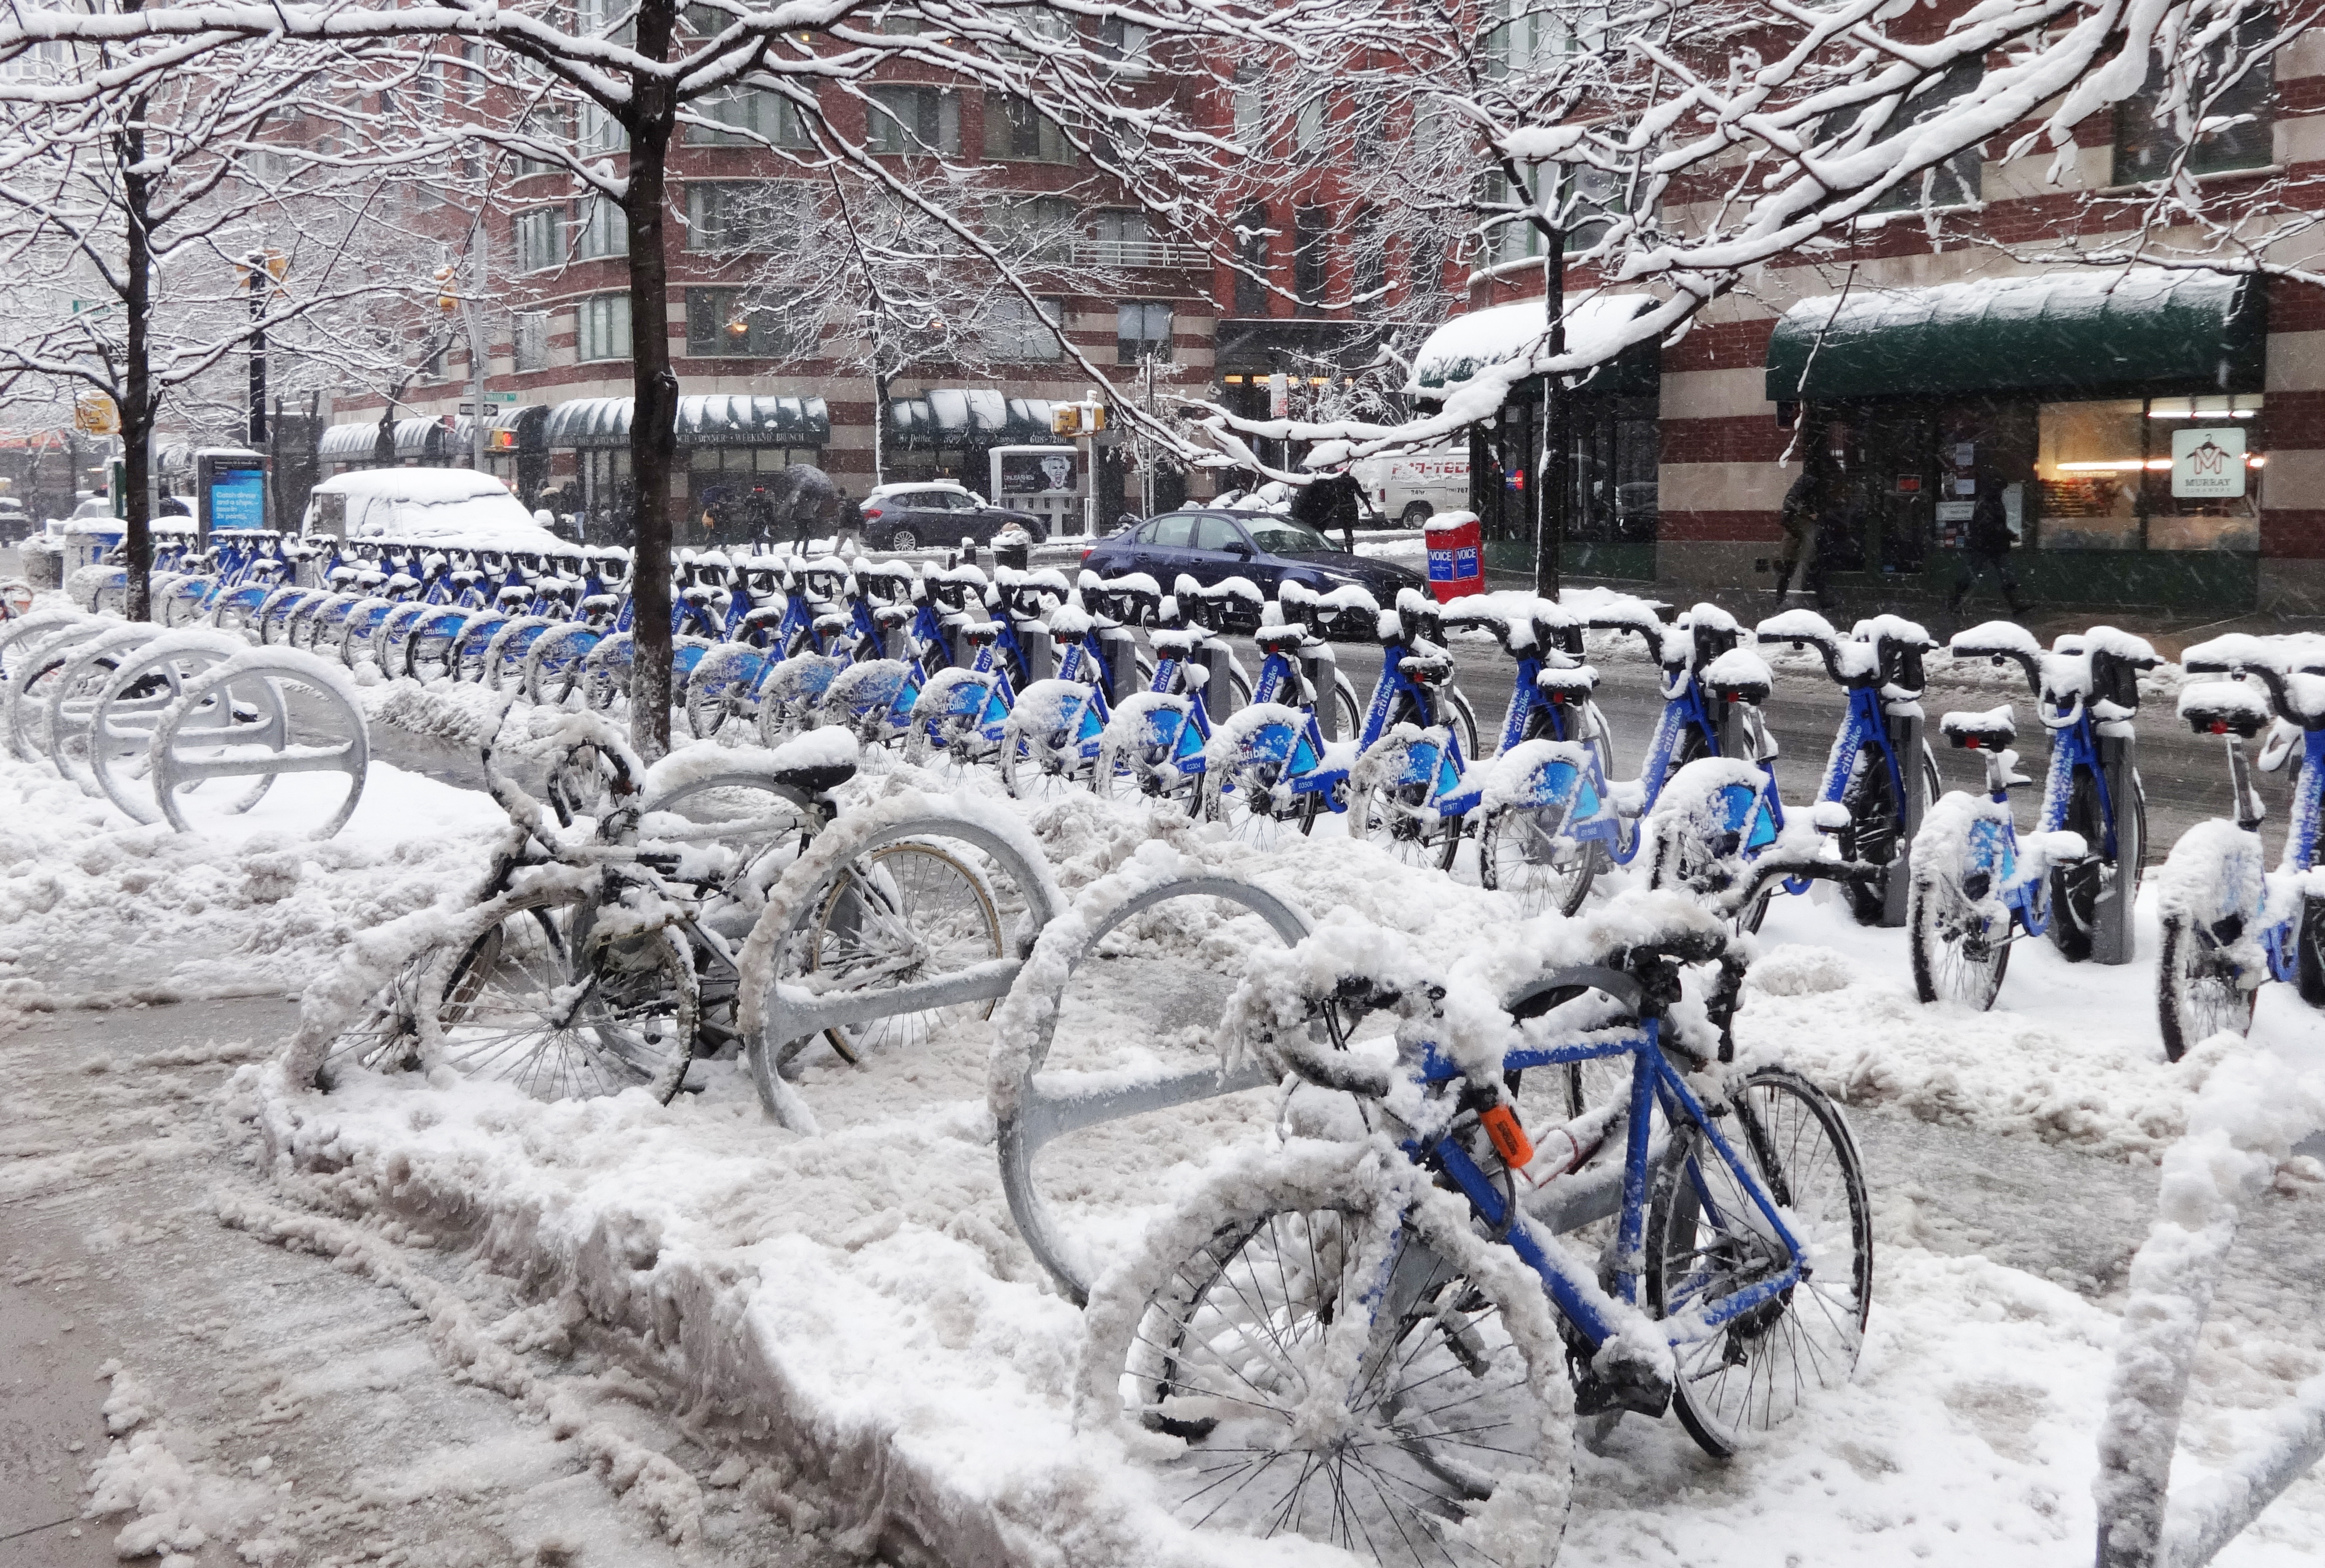 Citi Bikes in snow 2-3-2014